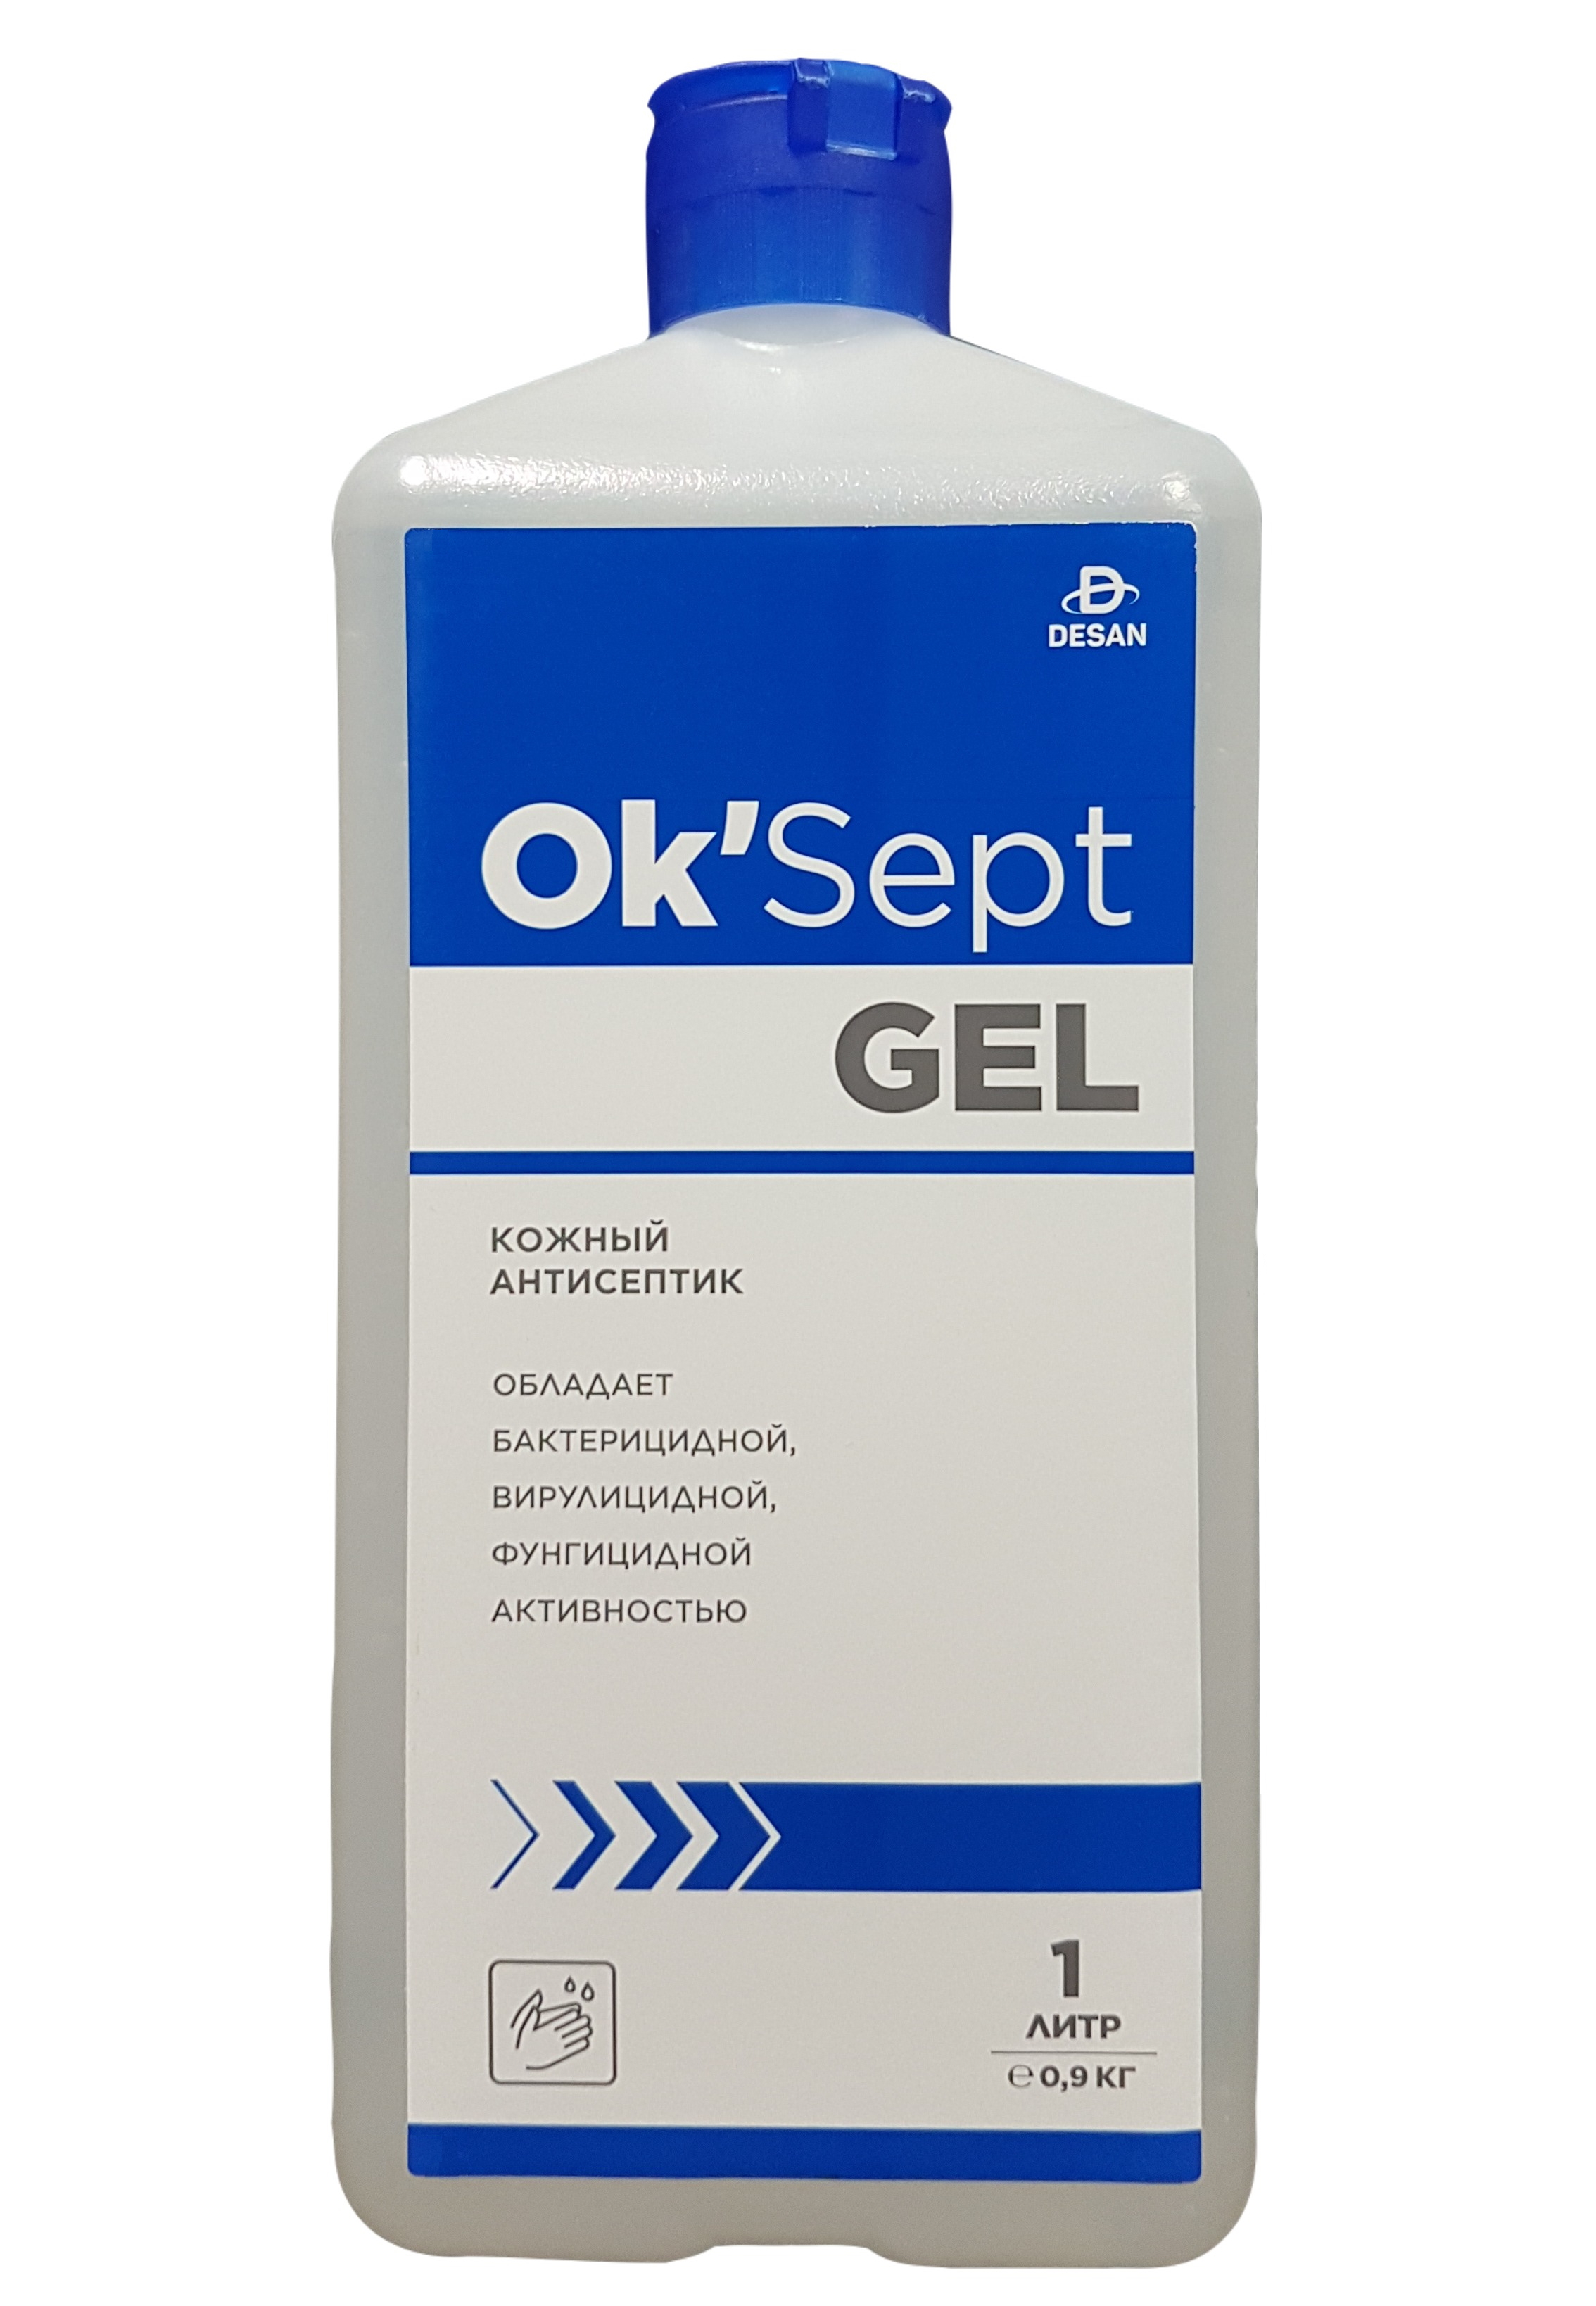 Антисептическое средство OK’Sept gel (ОК'Септ гель) 1 литр антисептическое средство астрадез септ 1 литр с дозатором